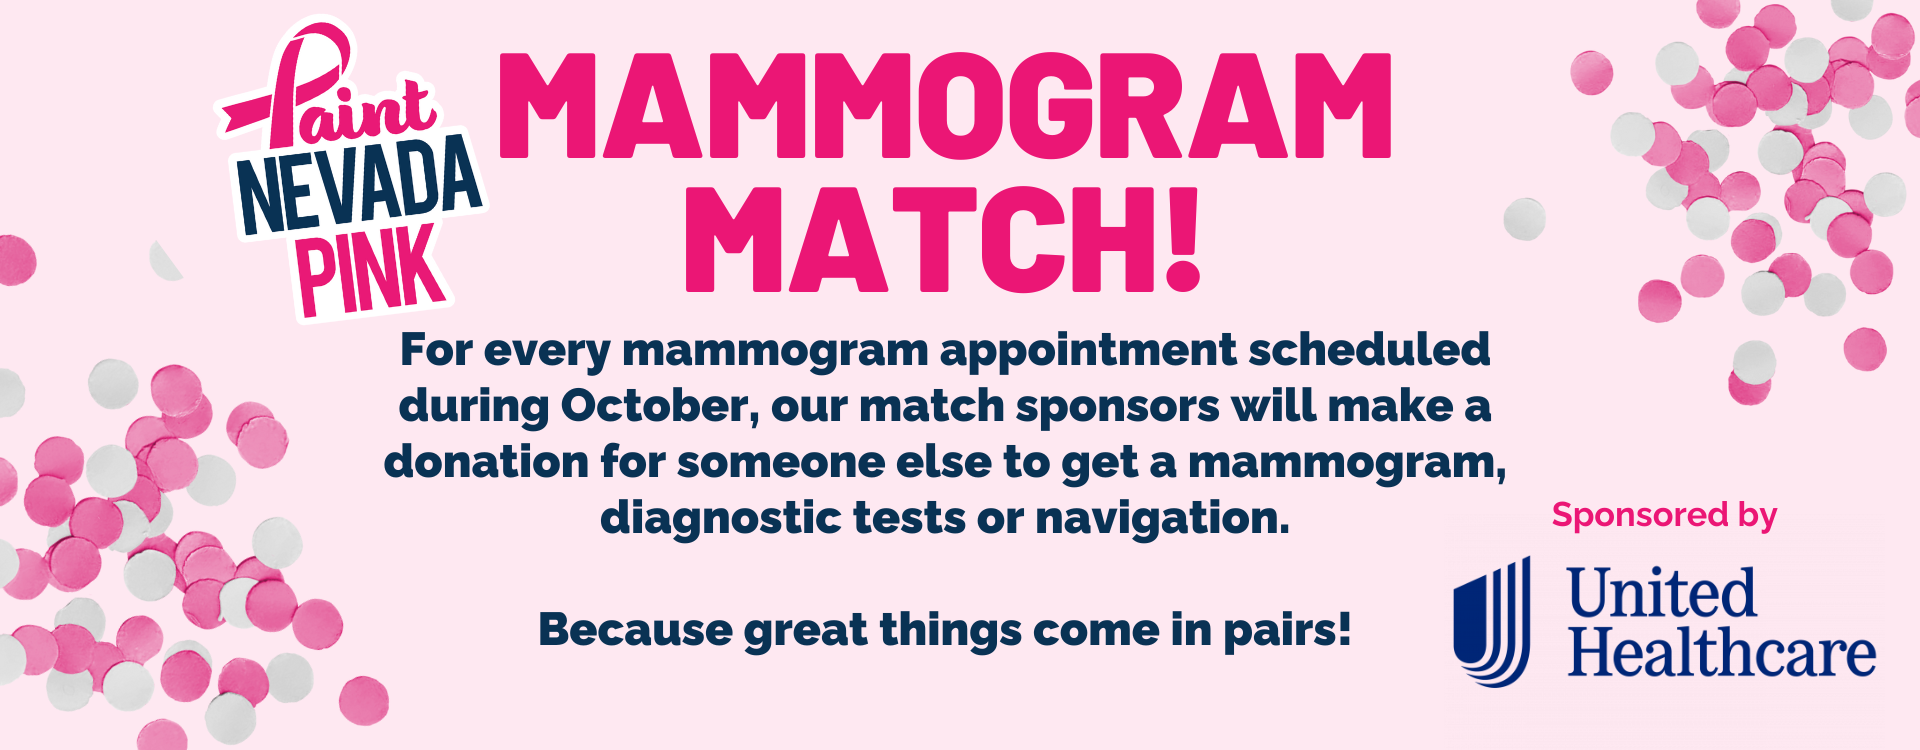 Mammogram match